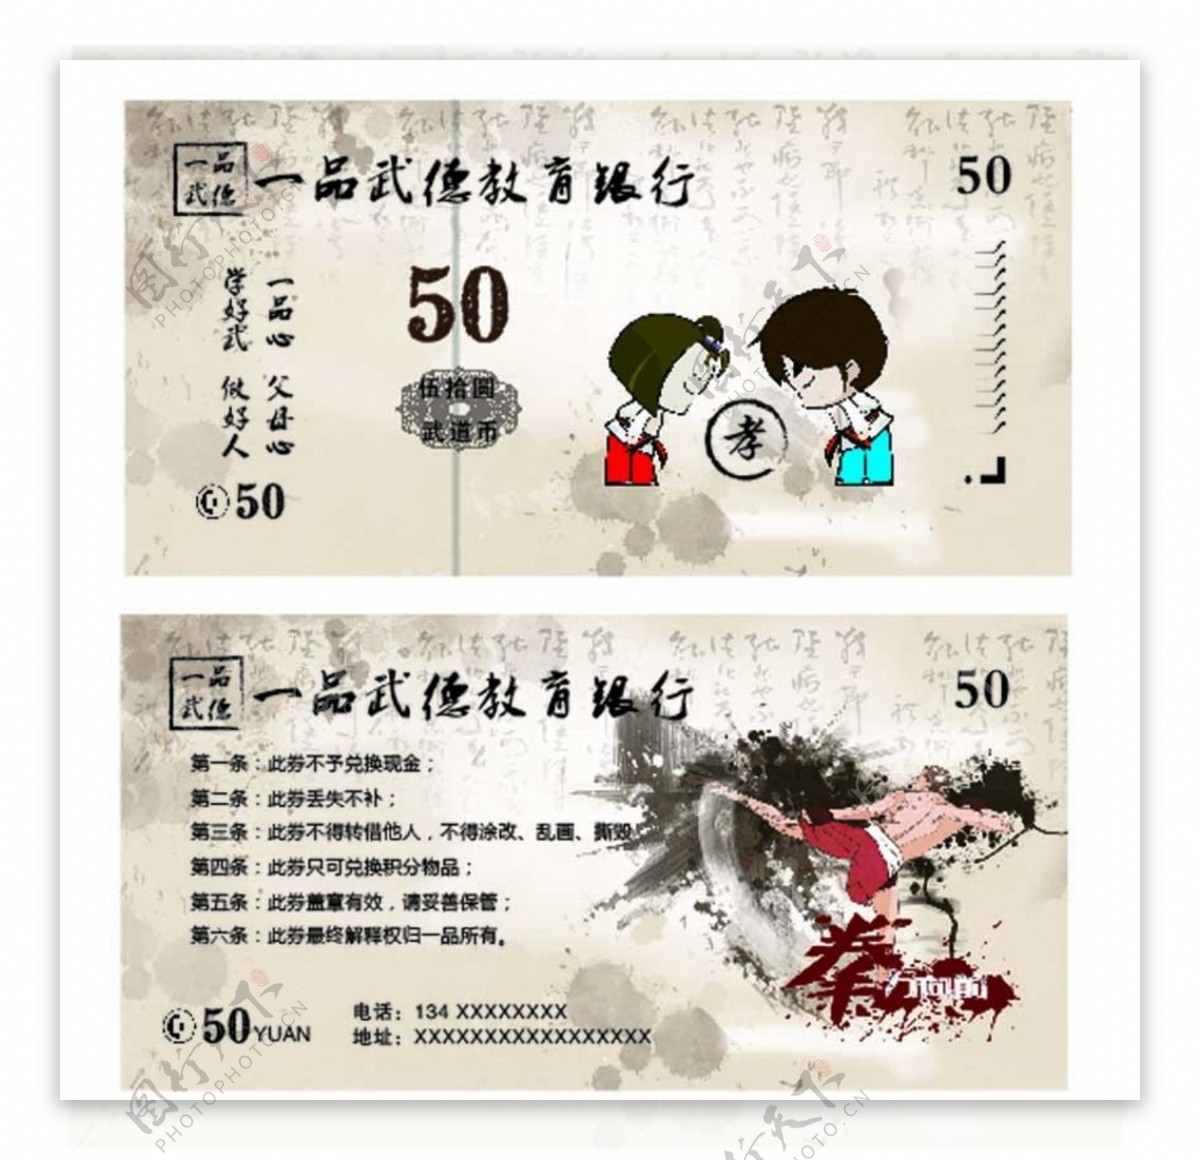 50元武道币